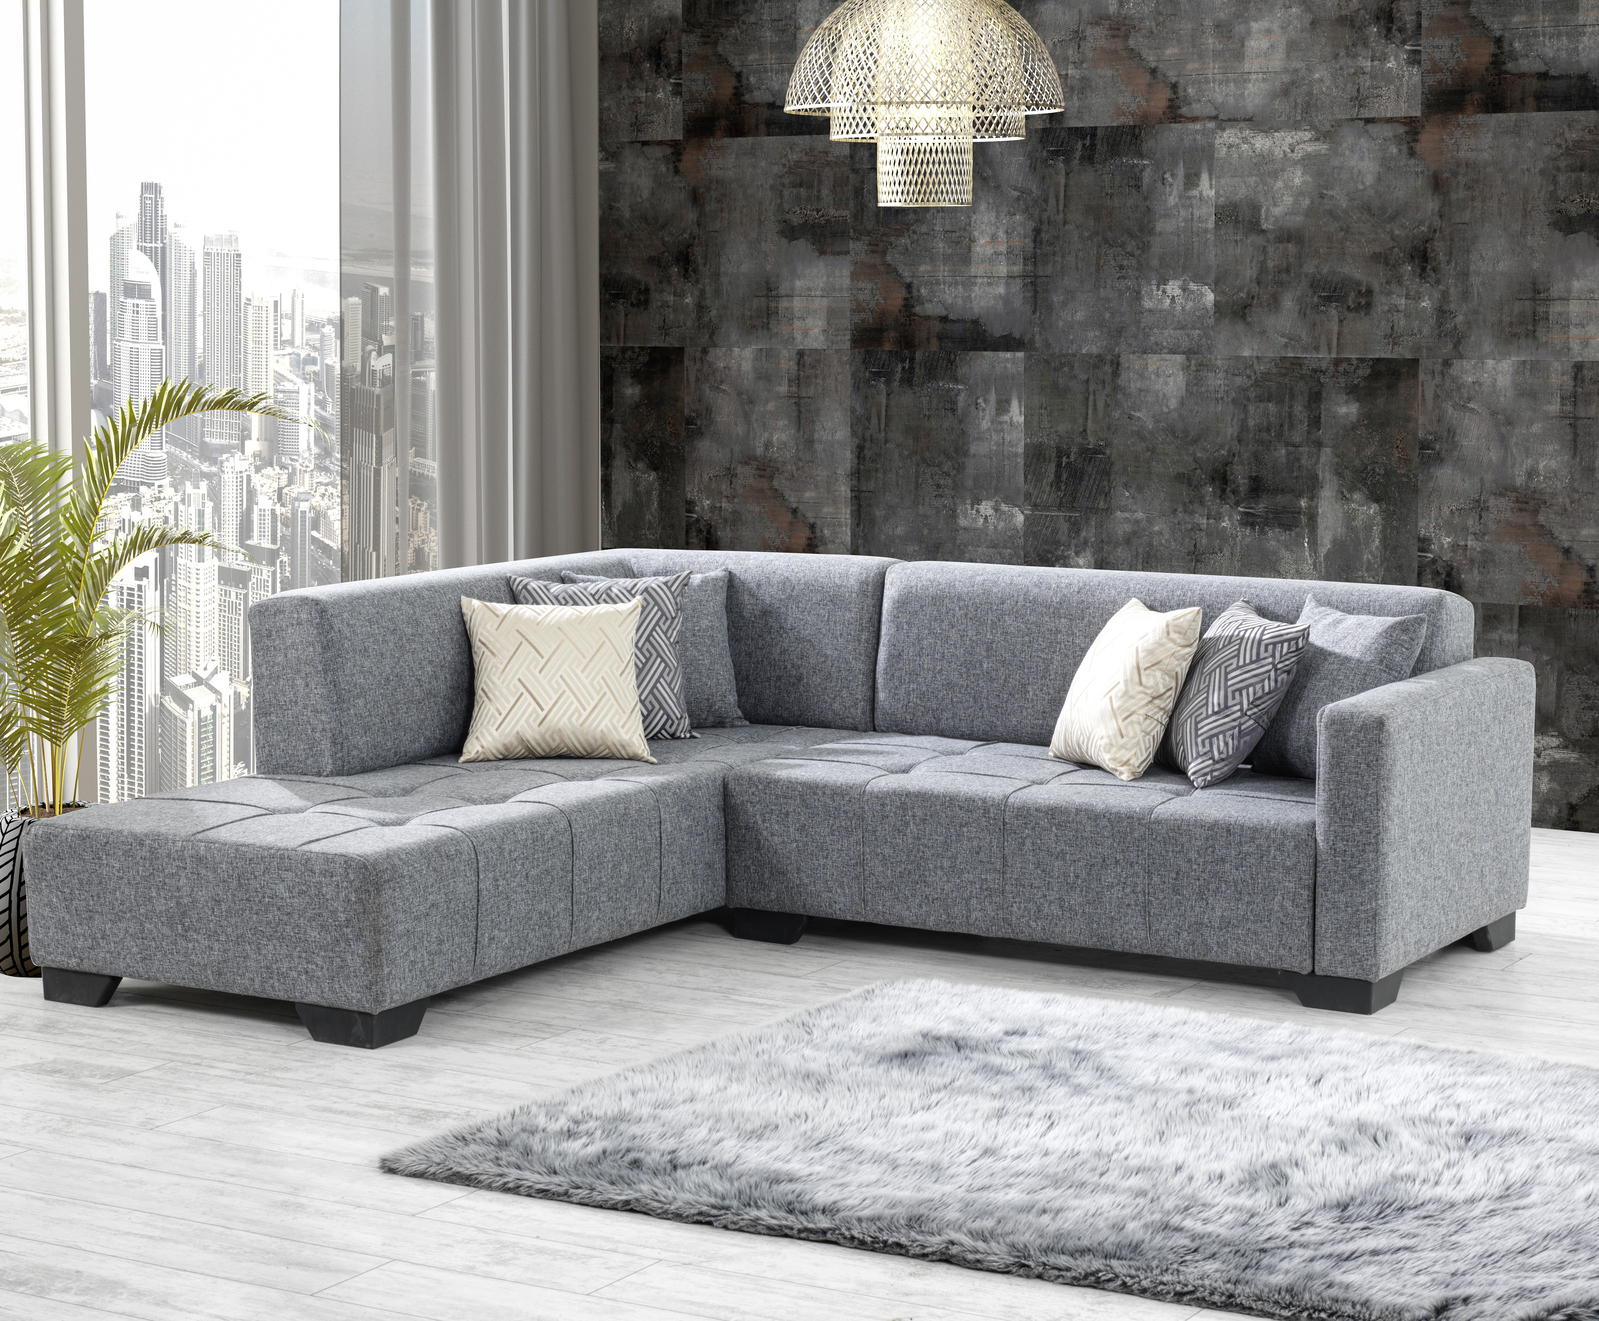 Sofa Set Models